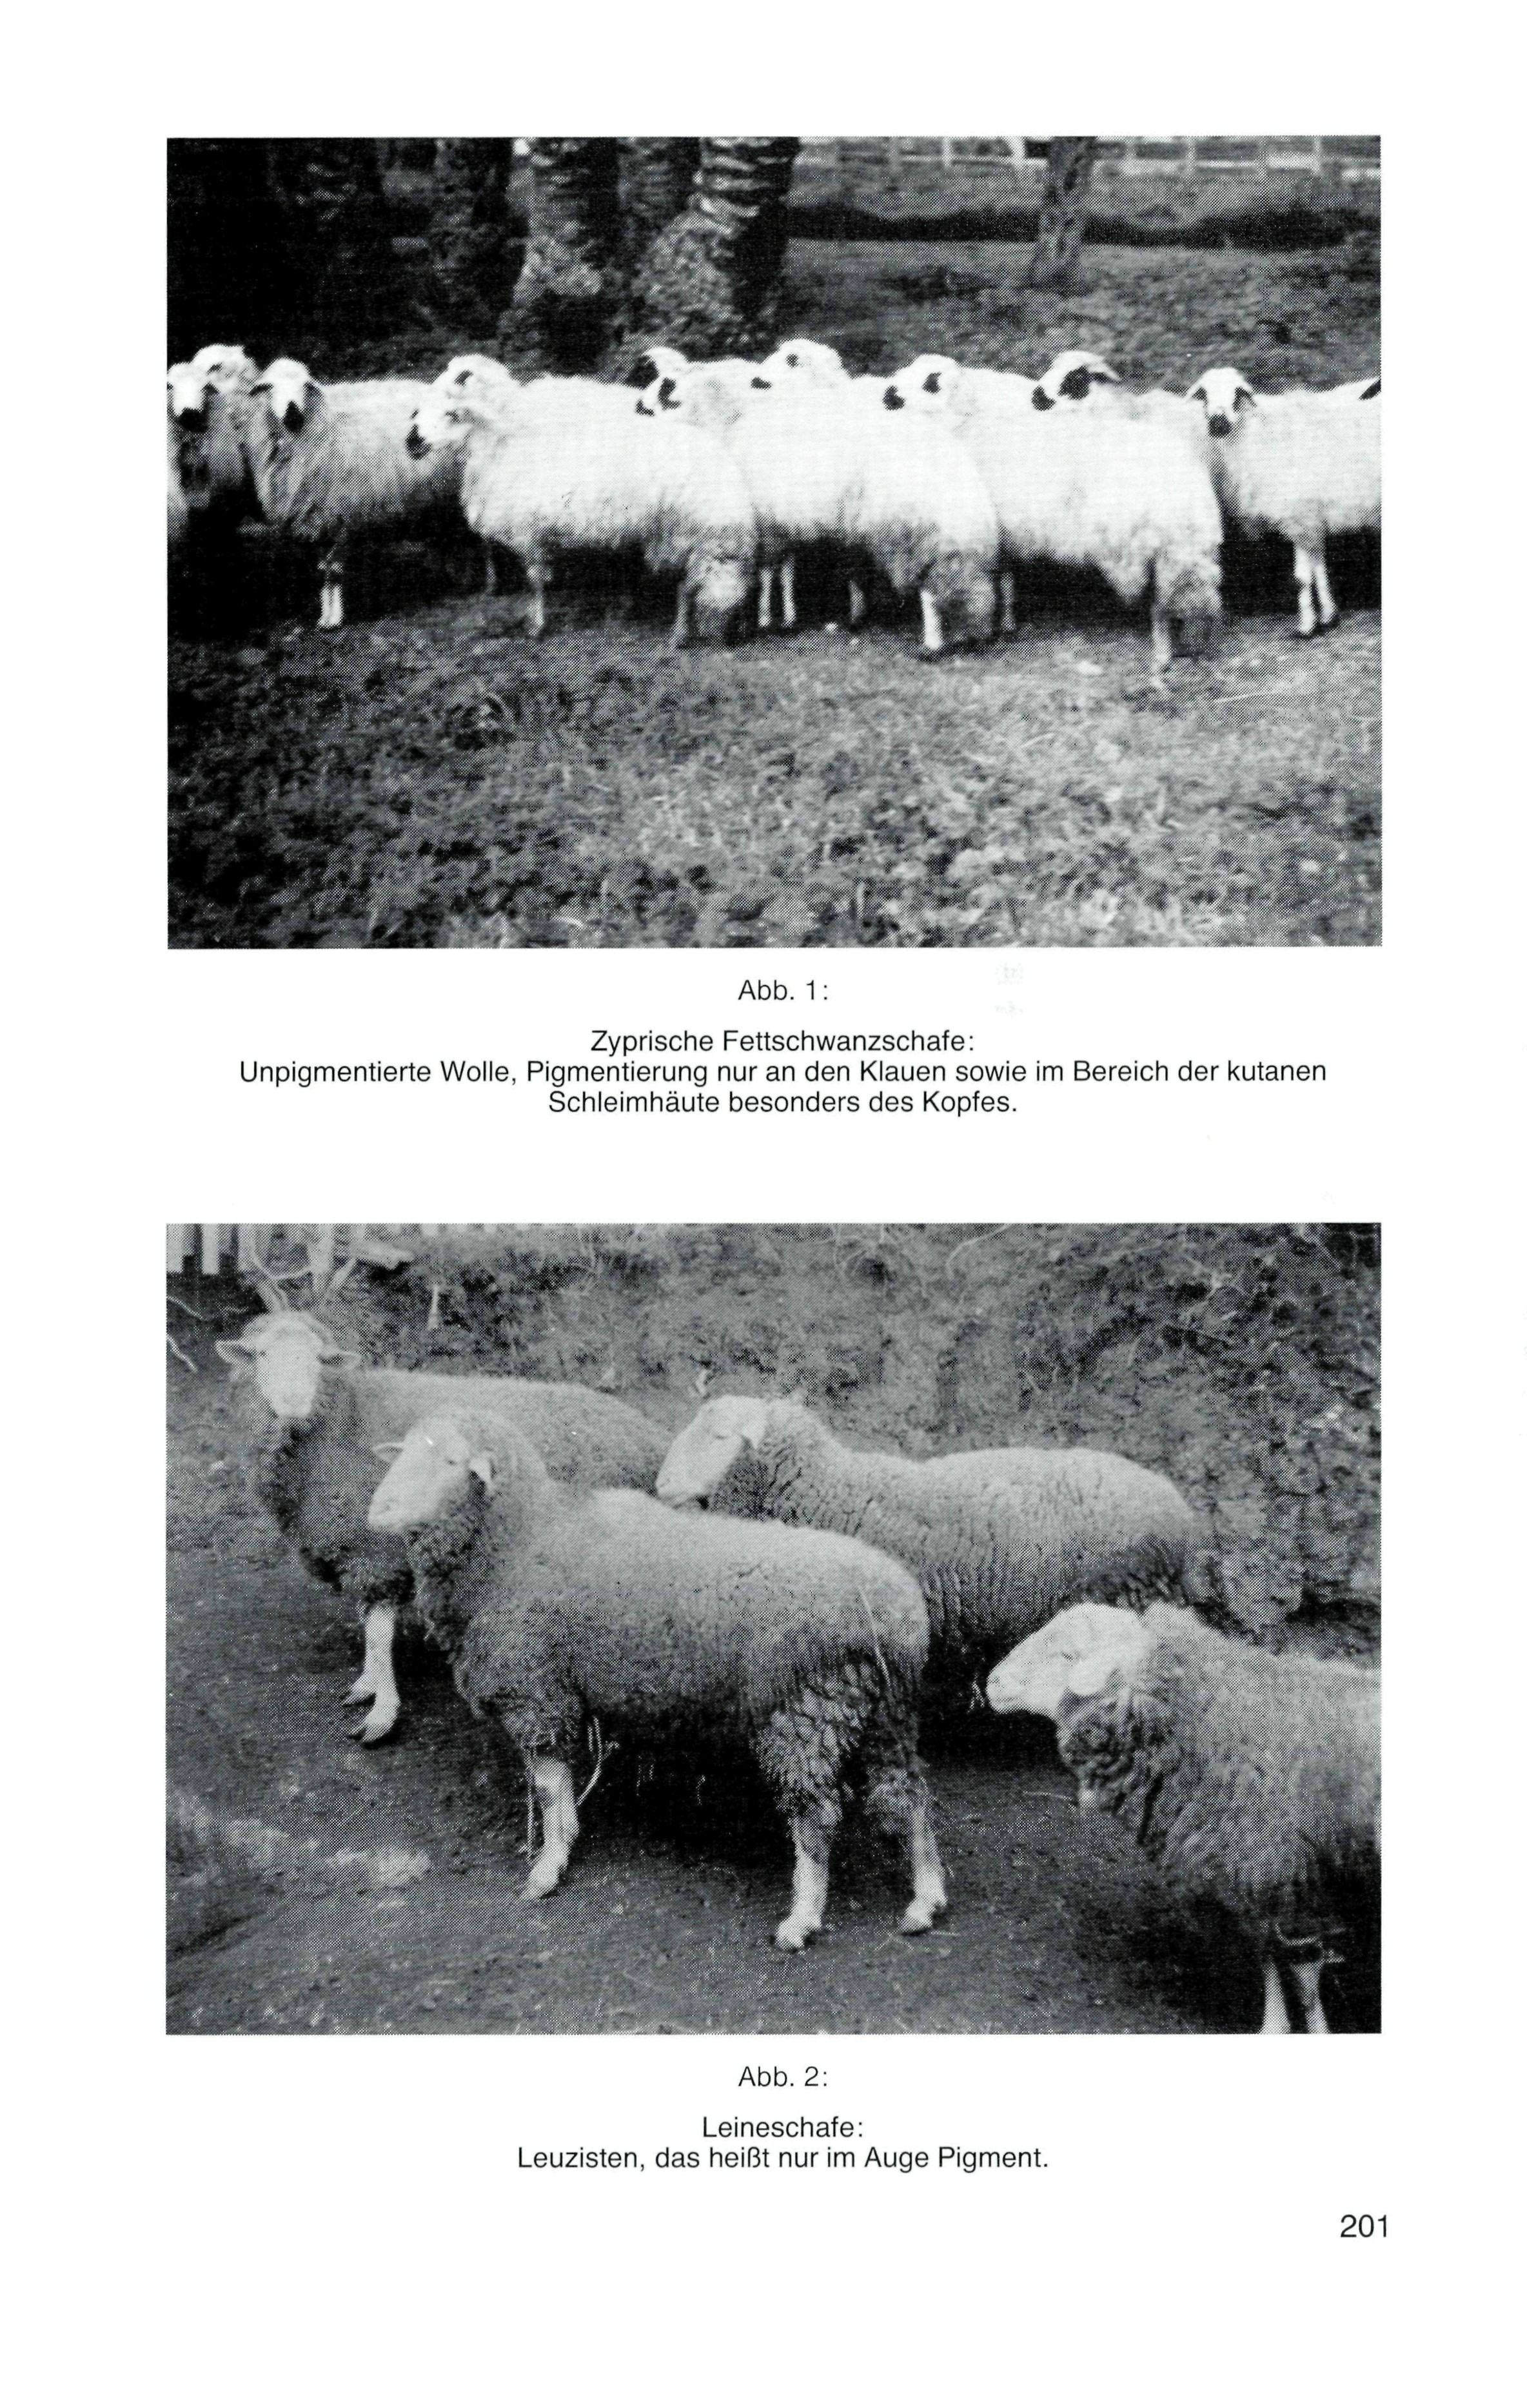 Abb. 1: Zyprische Fettschwanzschafe: Unpigmentierte Wolle, Pigmentierung nur an den Klauen sowie im Bereich